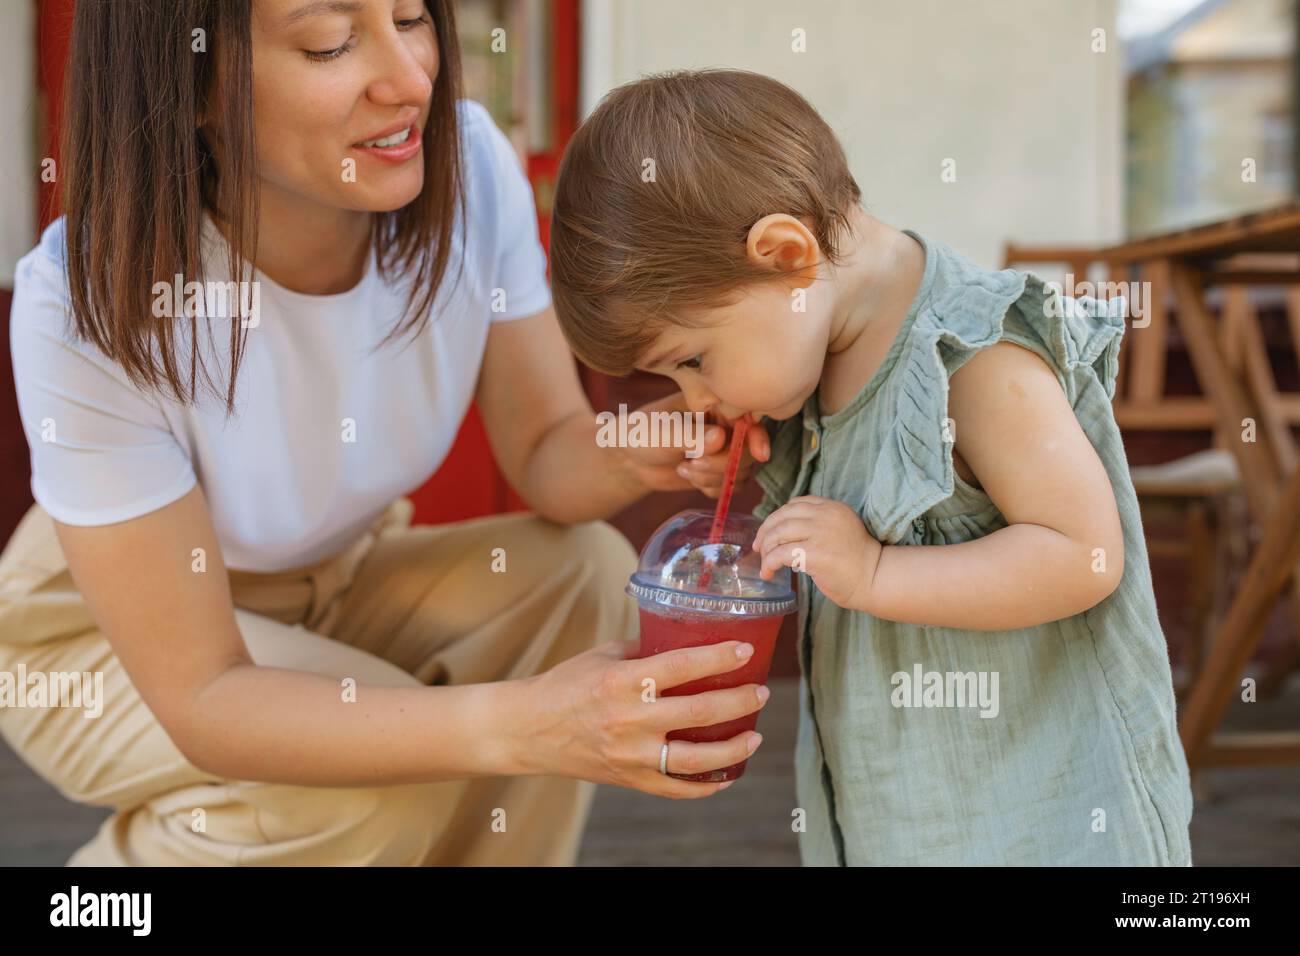 Die Mutter hockt sich in der Hand mit einem alkoholfreien Getränk, das ihre Tochter trinkt Stockfoto